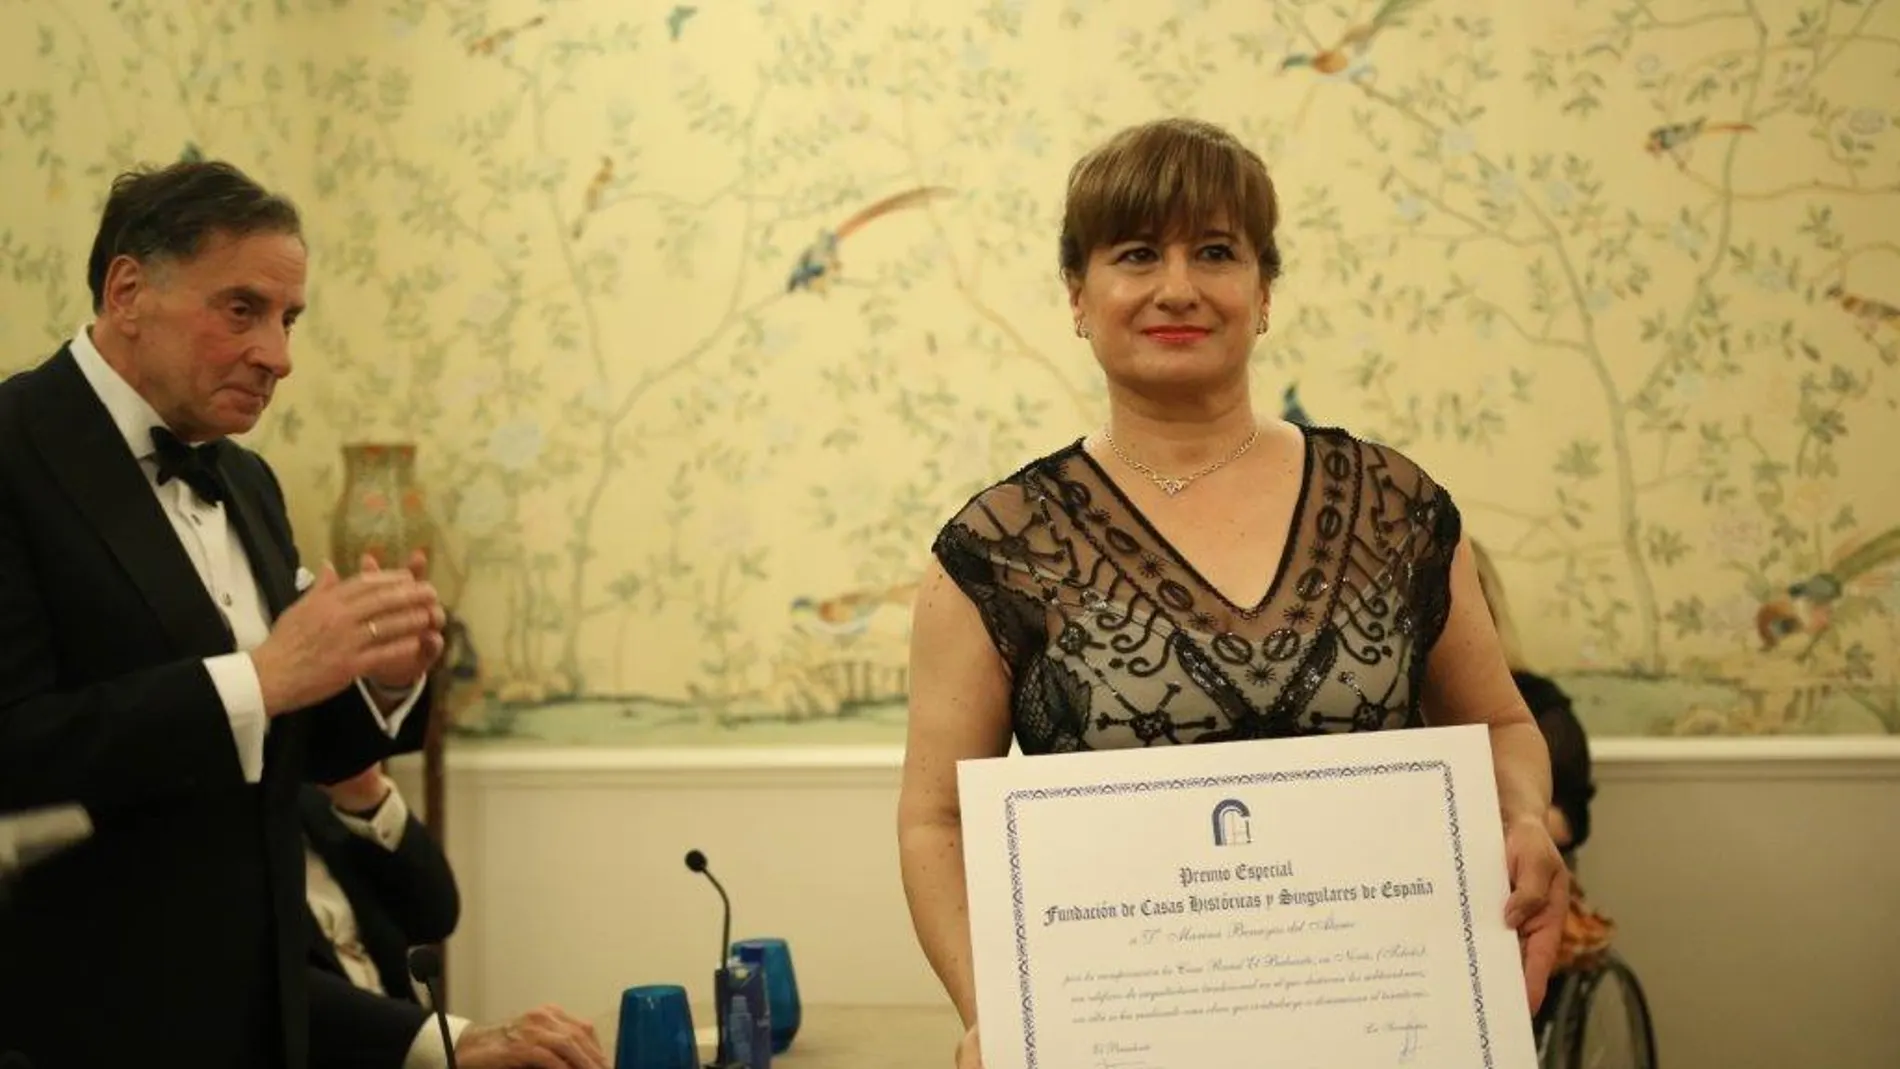 Marina Benayas recibe el Premio Fundación Casas Históricas y Singulares